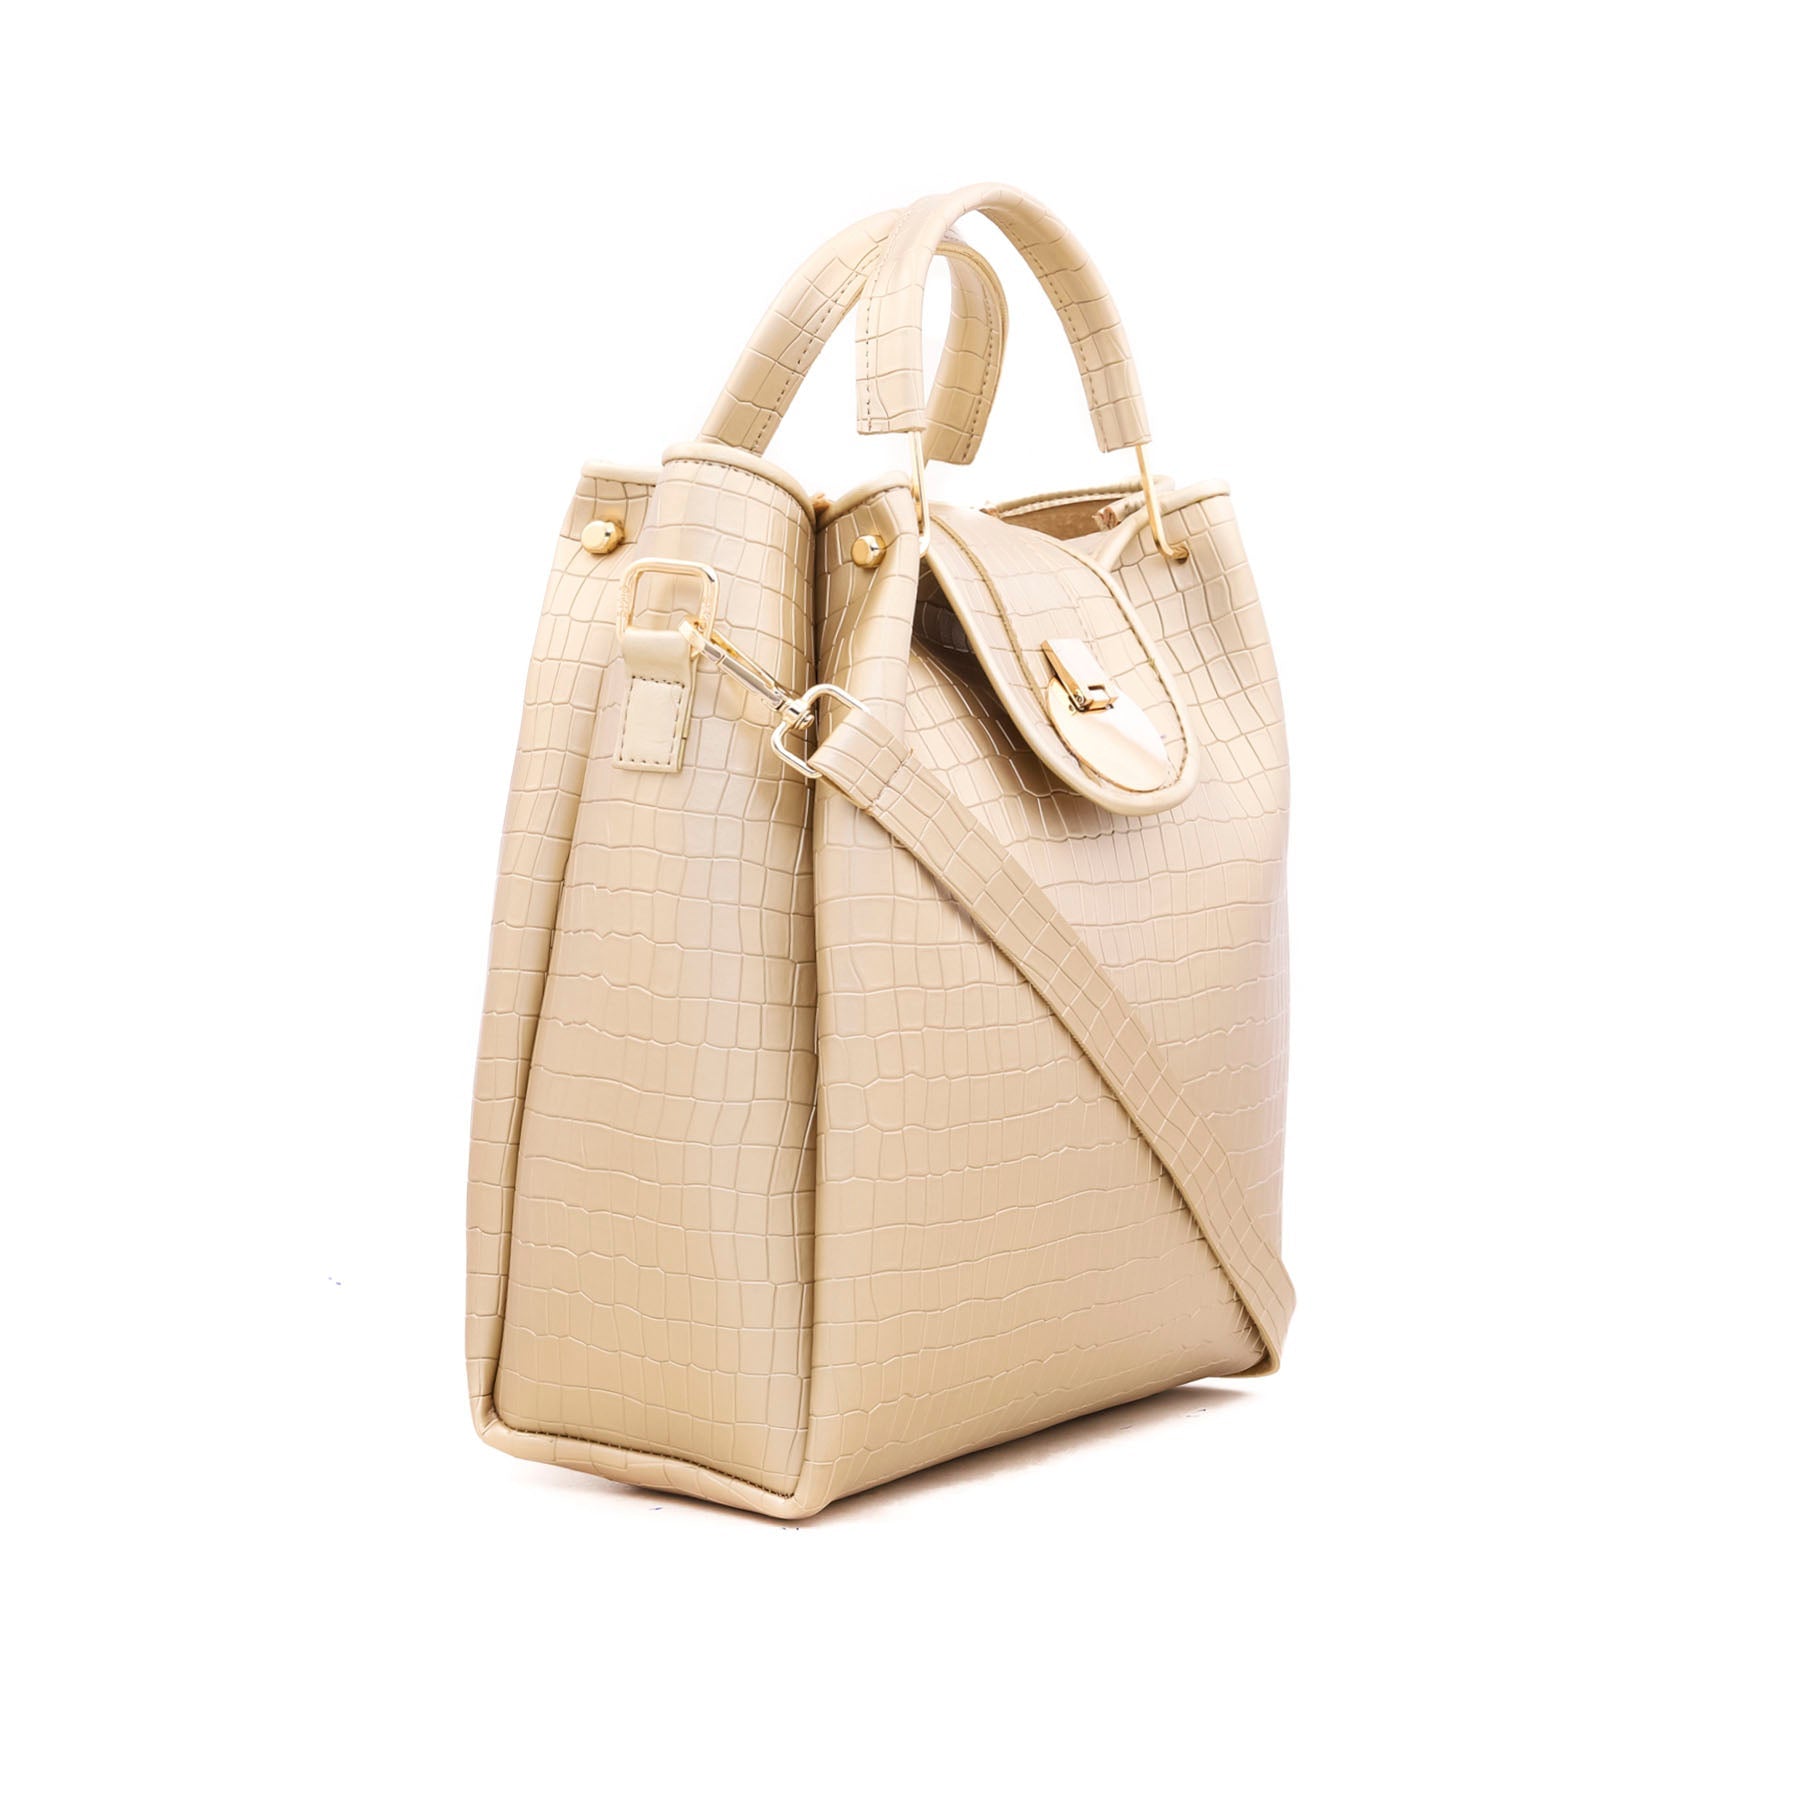 Golden Formal Hand Bag P54313